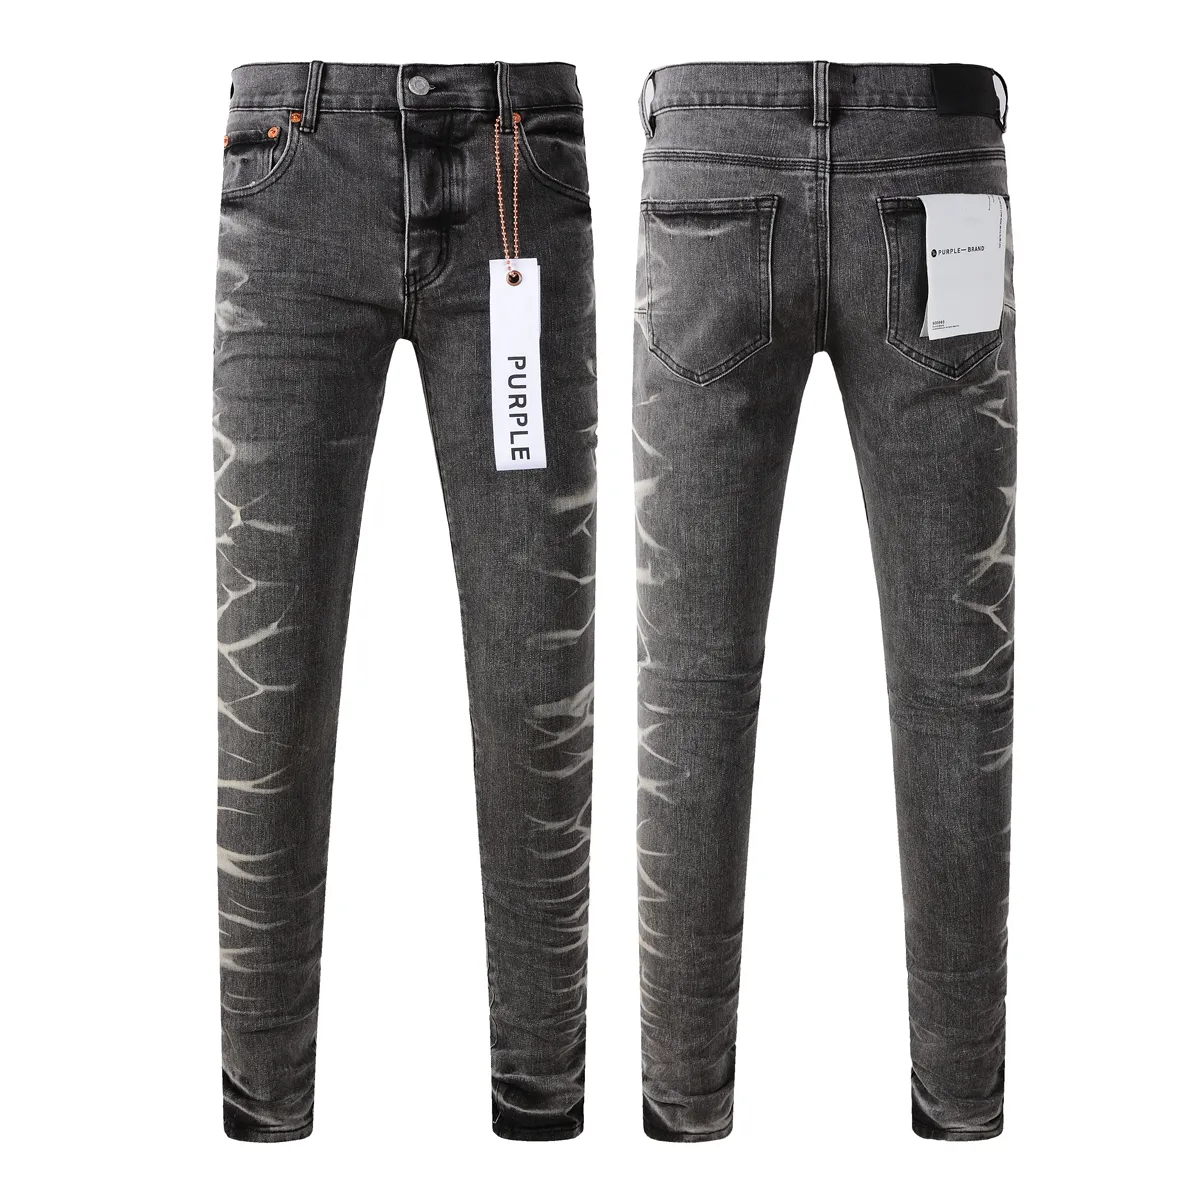 Jeans skinny homens mens jeans designers jeans roxos homens jeans designer jeans calças de caminhada Rip hip hop calças de marca de moda de rua alta motocicleta bordado bodycon z6